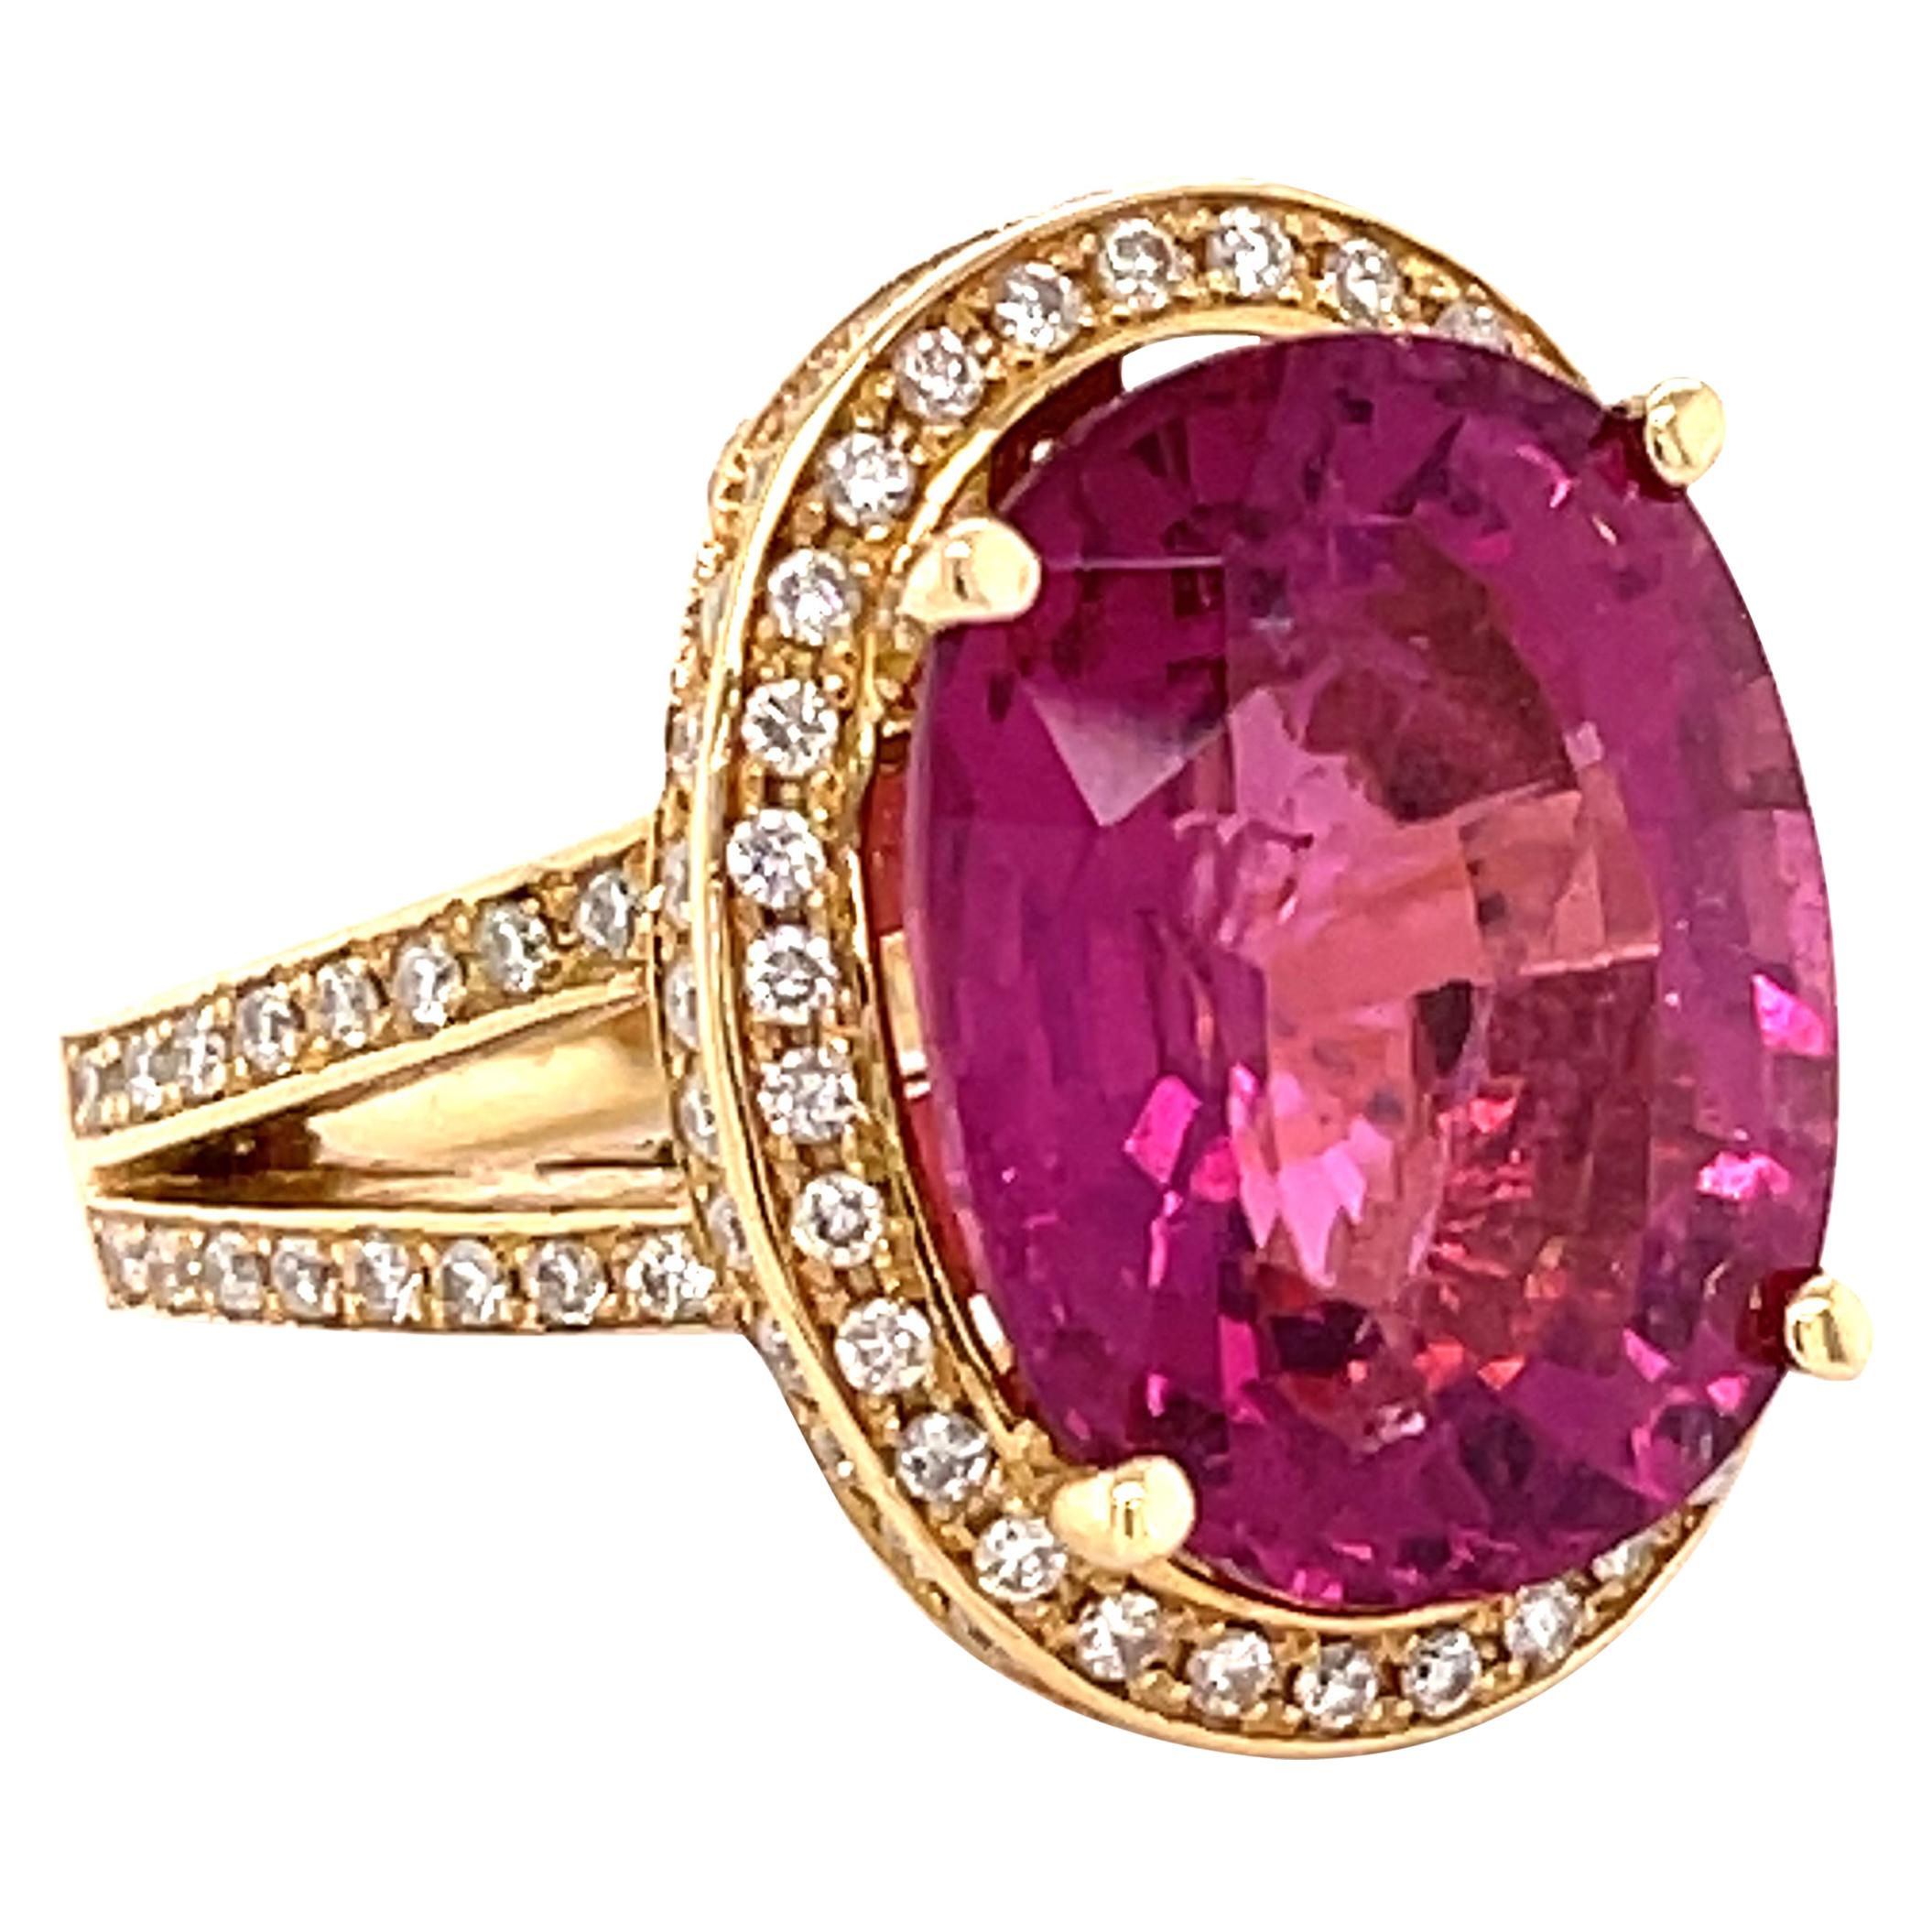 11.49 Carats Pink Tourmaline and 1. Carat Diamond Gold Ring